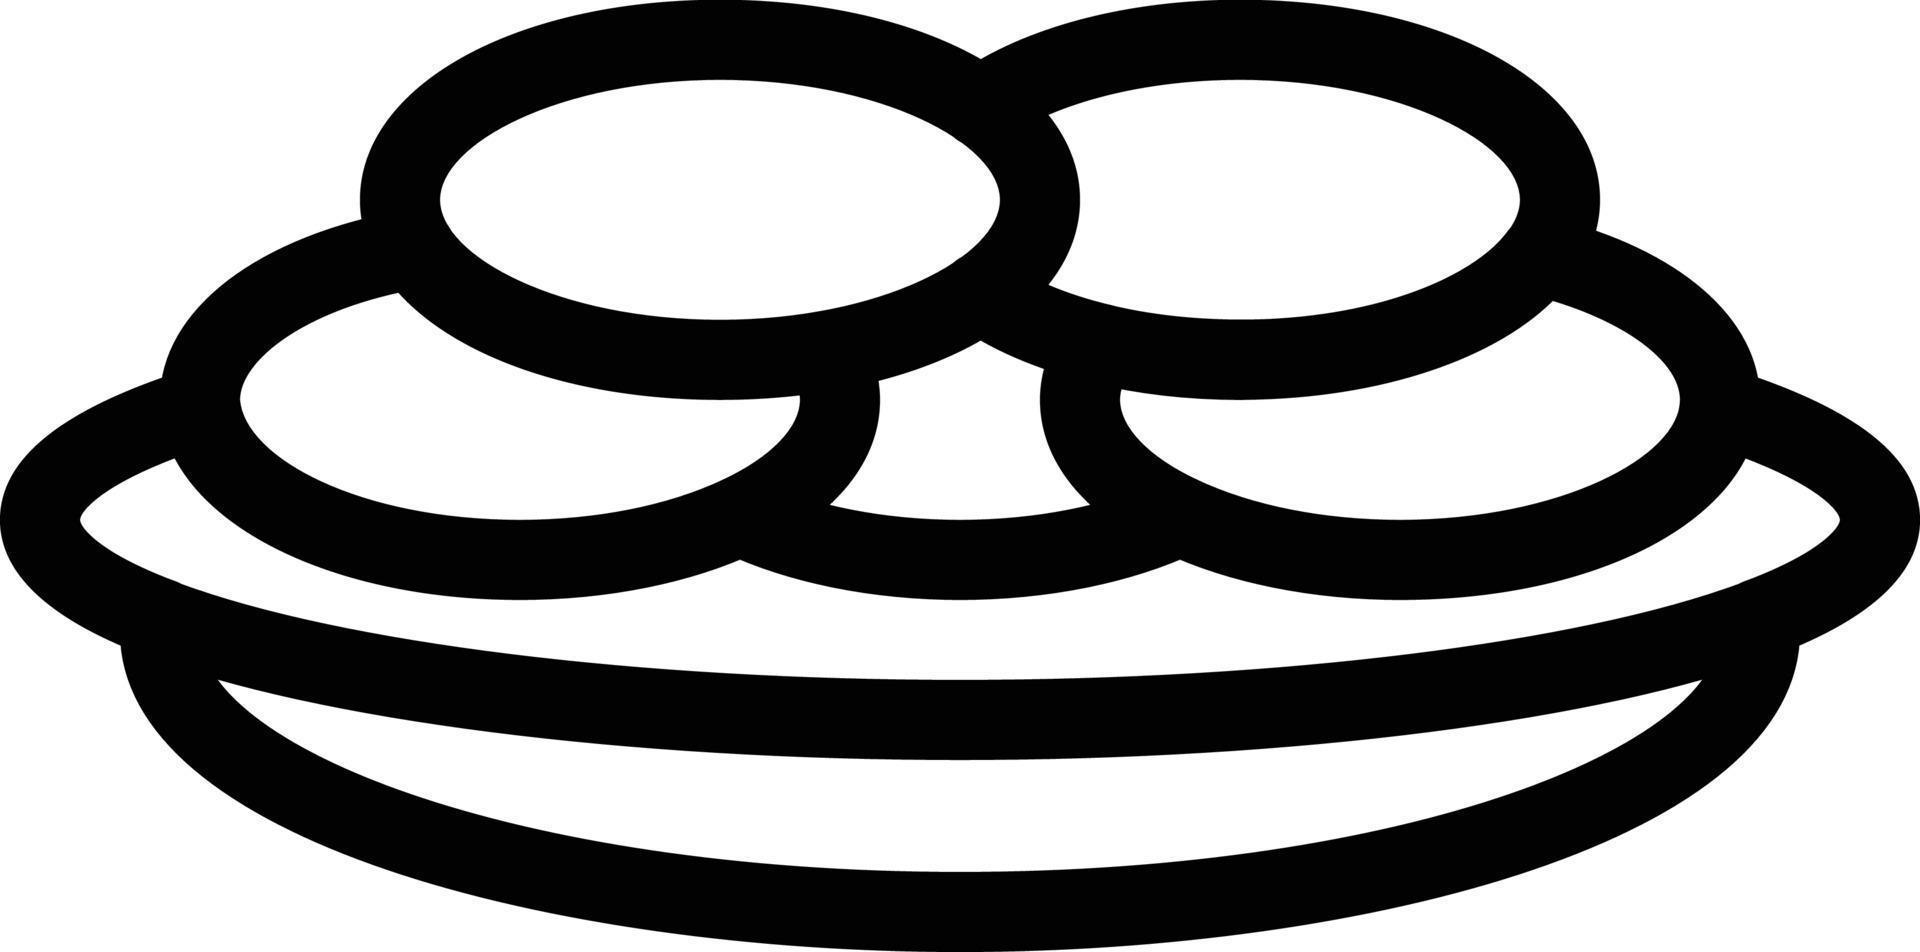 pfannkuchenvektorillustration auf einem hintergrund. hochwertige symbole. vektorikonen für konzept und grafikdesign. vektor